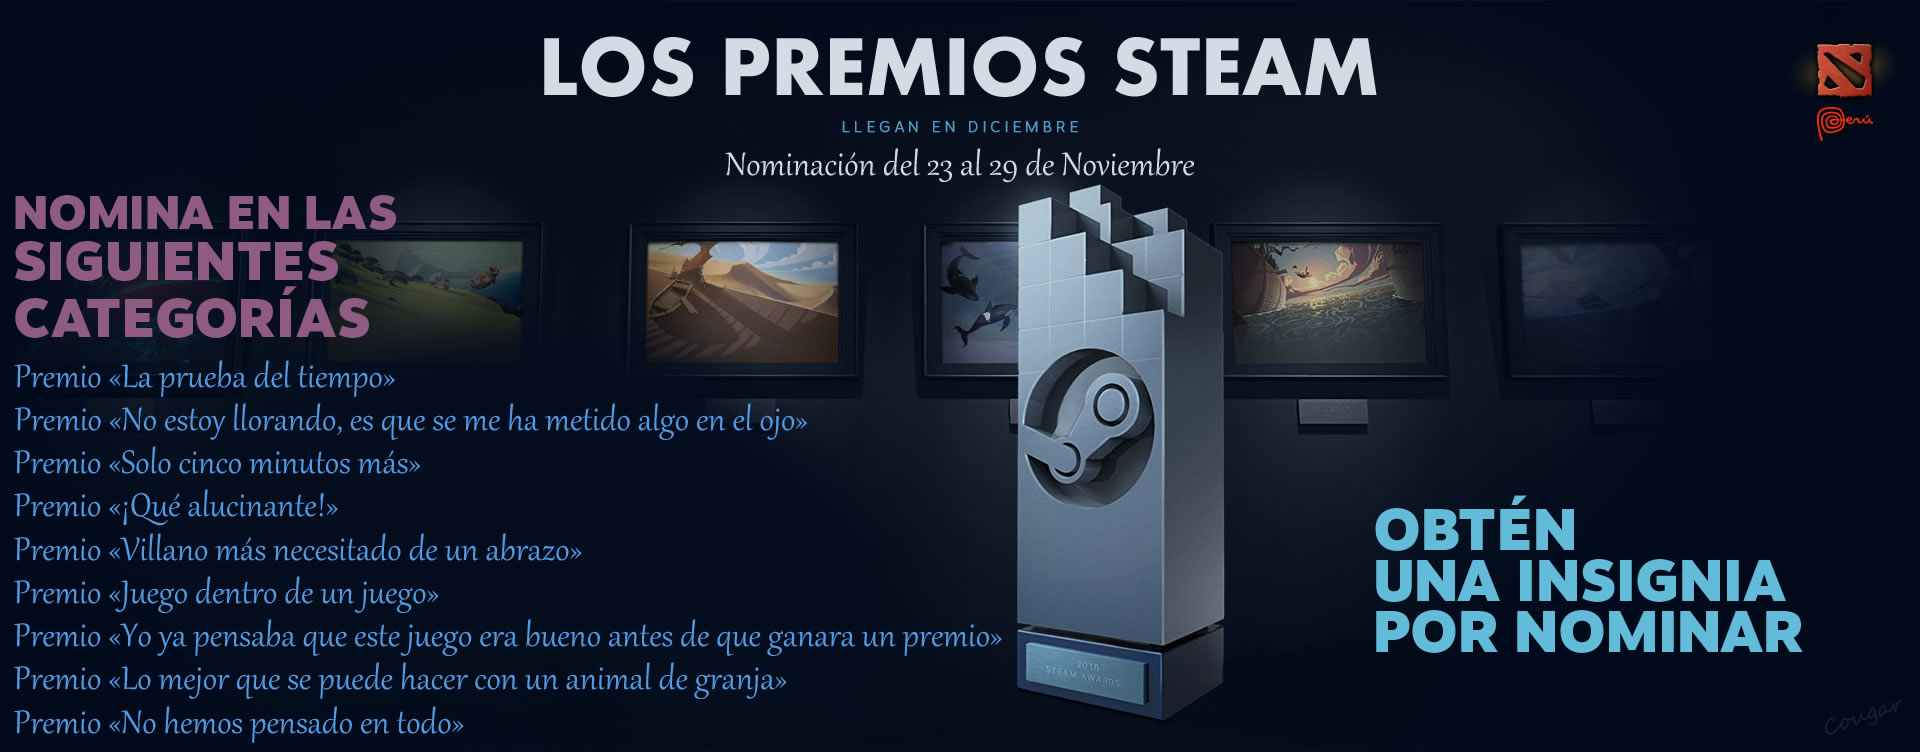 Los Premios Steam